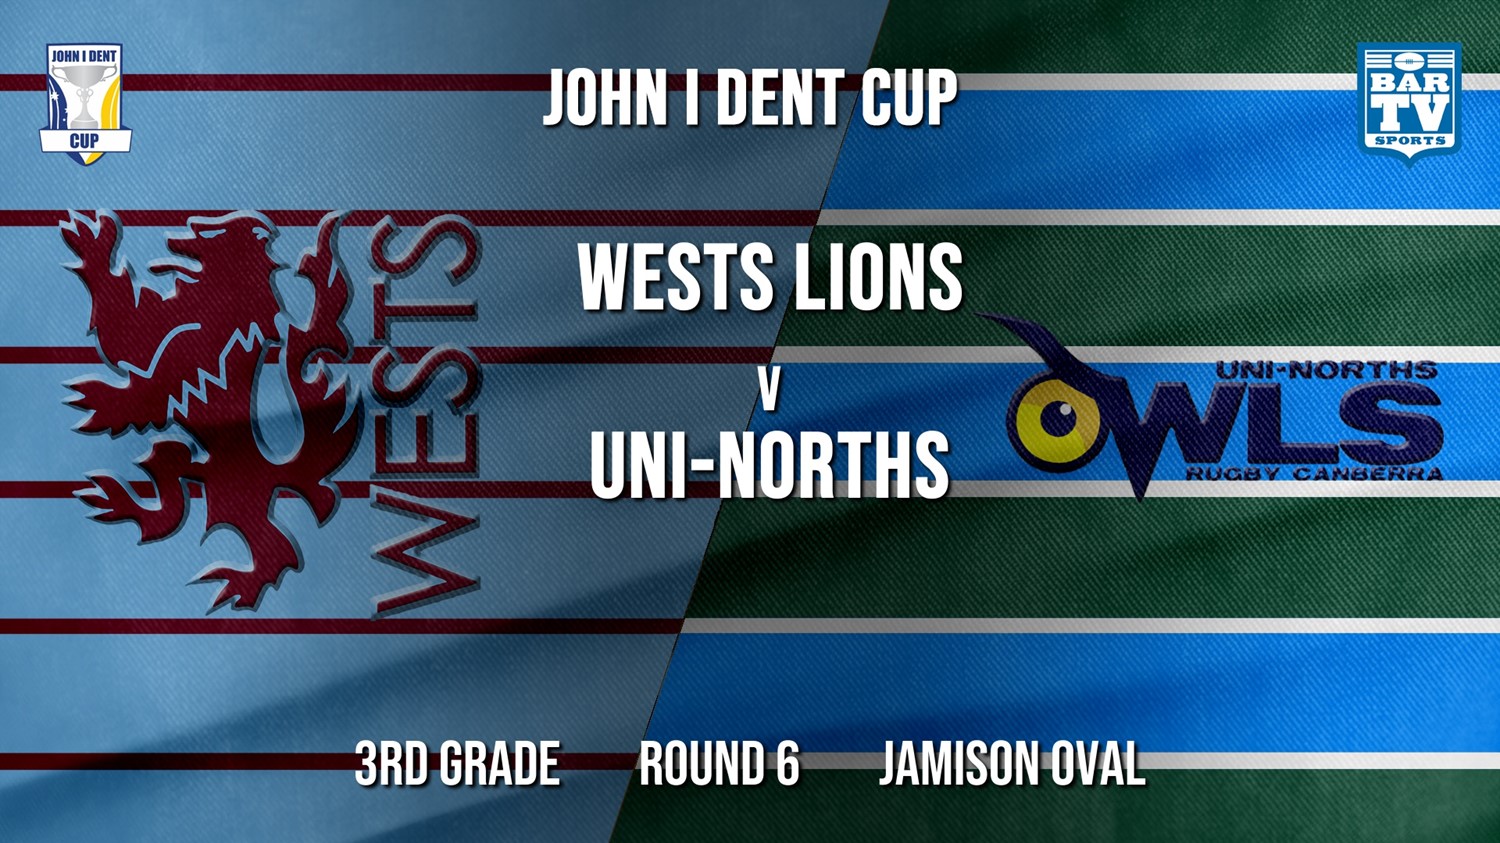 John I Dent Round 6 - 3rd Grade - Wests Lions v UNI-Norths Minigame Slate Image